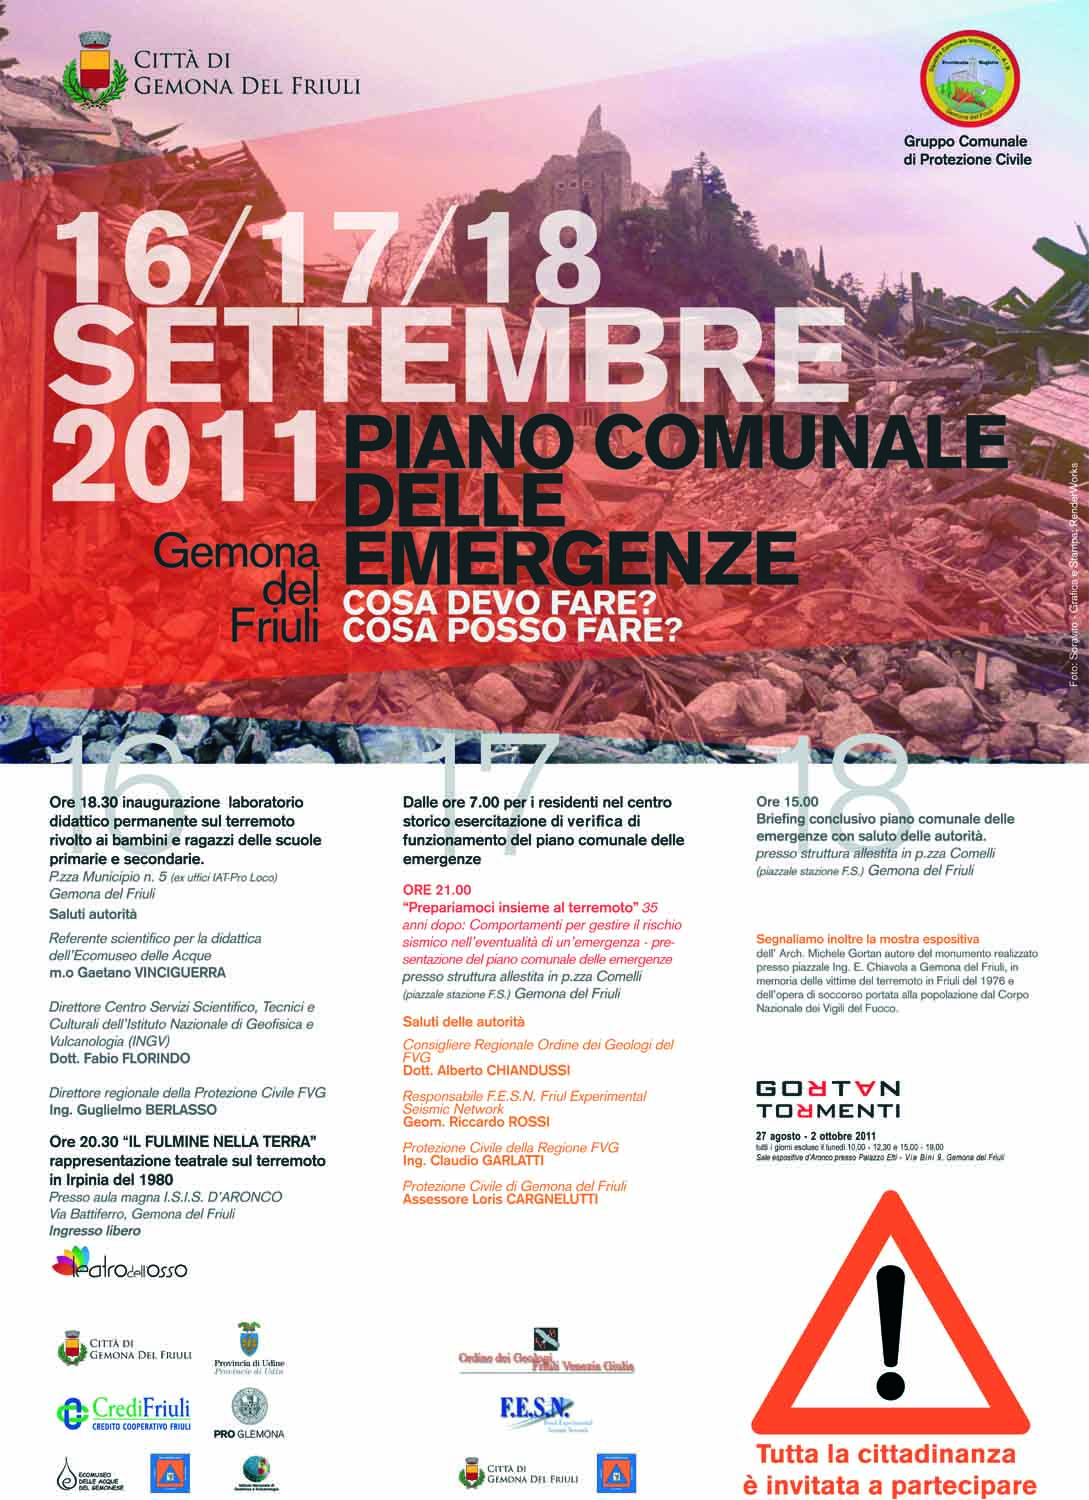 Le iniziative in Friuli per ricordare il terremoto